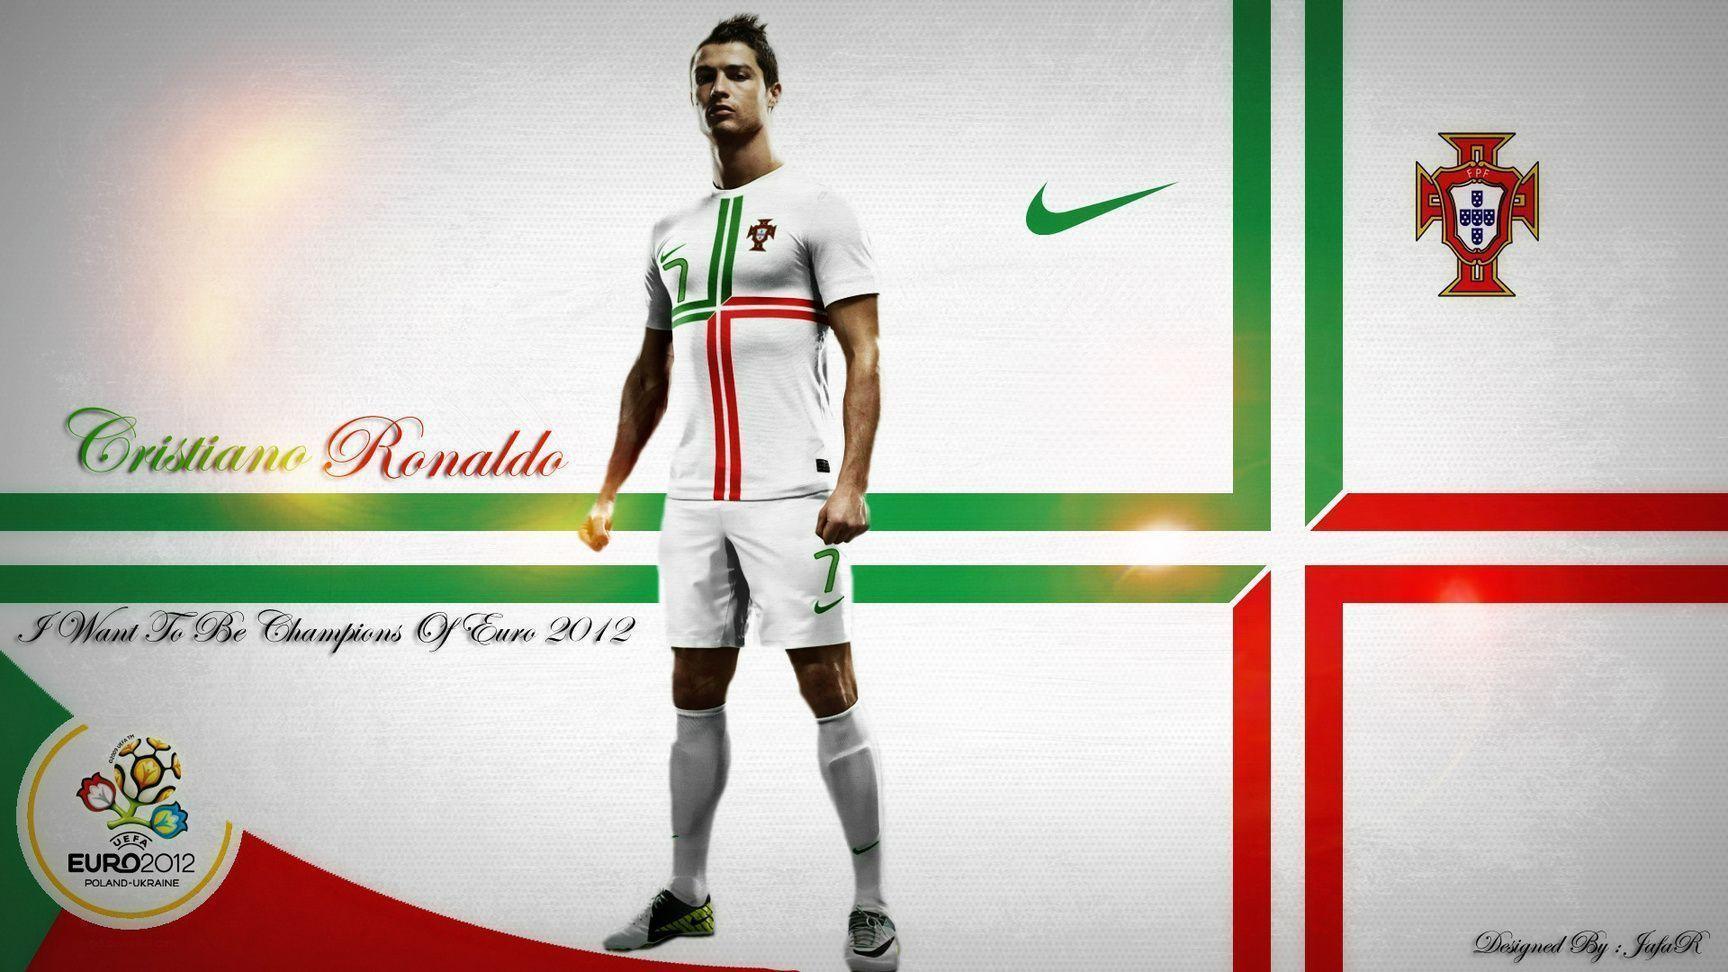 Cristiano Ronaldo Background Wallpaper Download Wallpaper